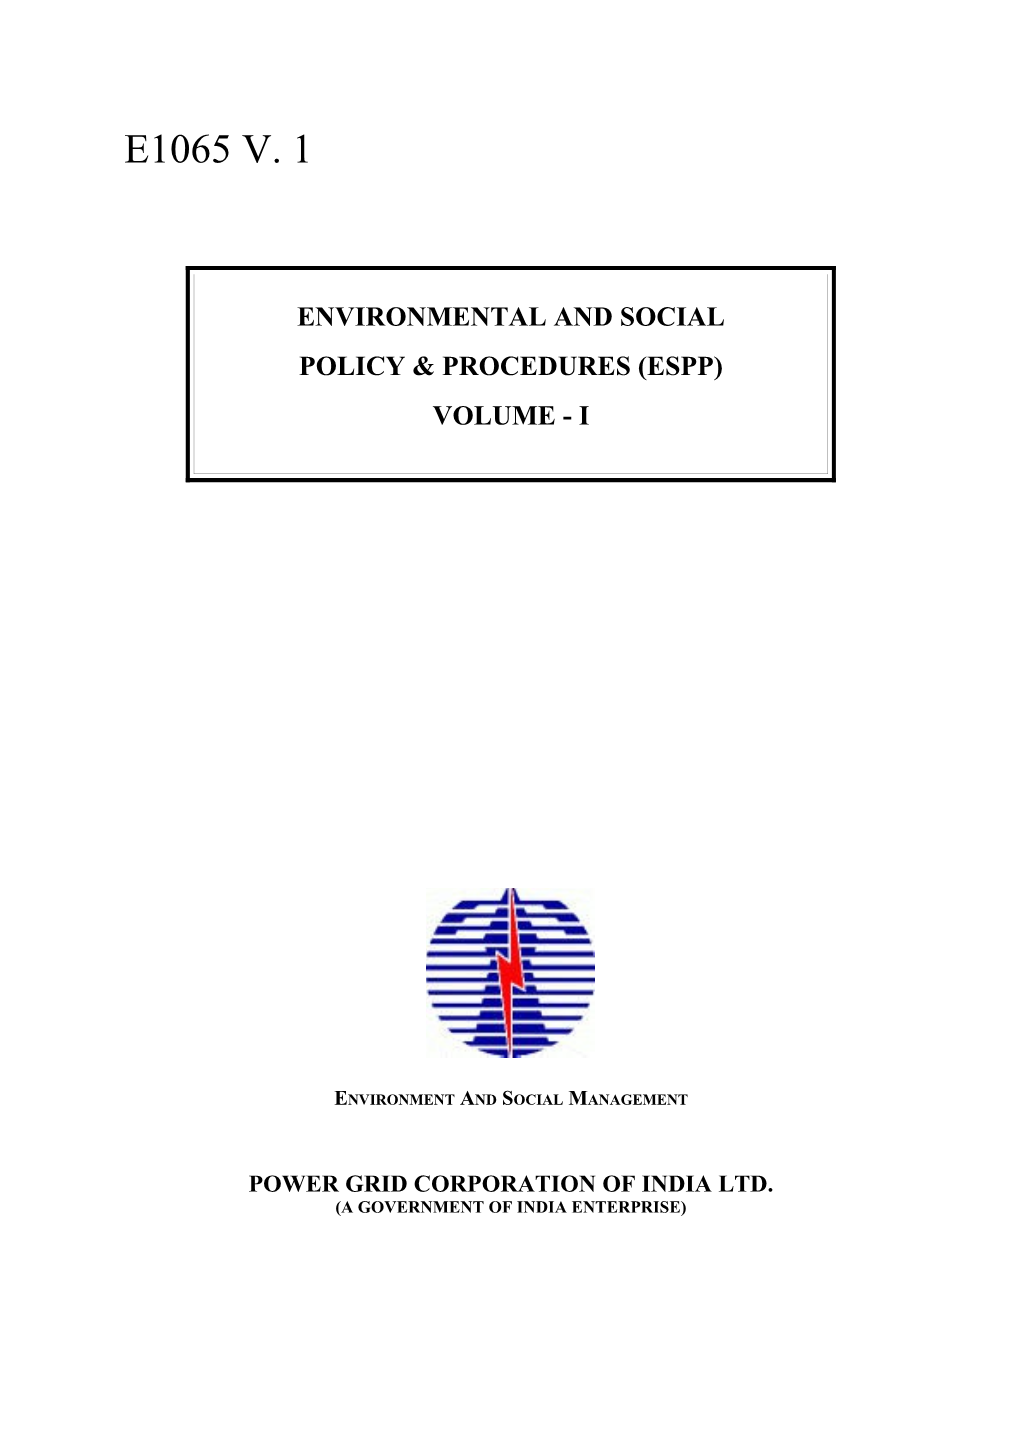 Environmental and Social